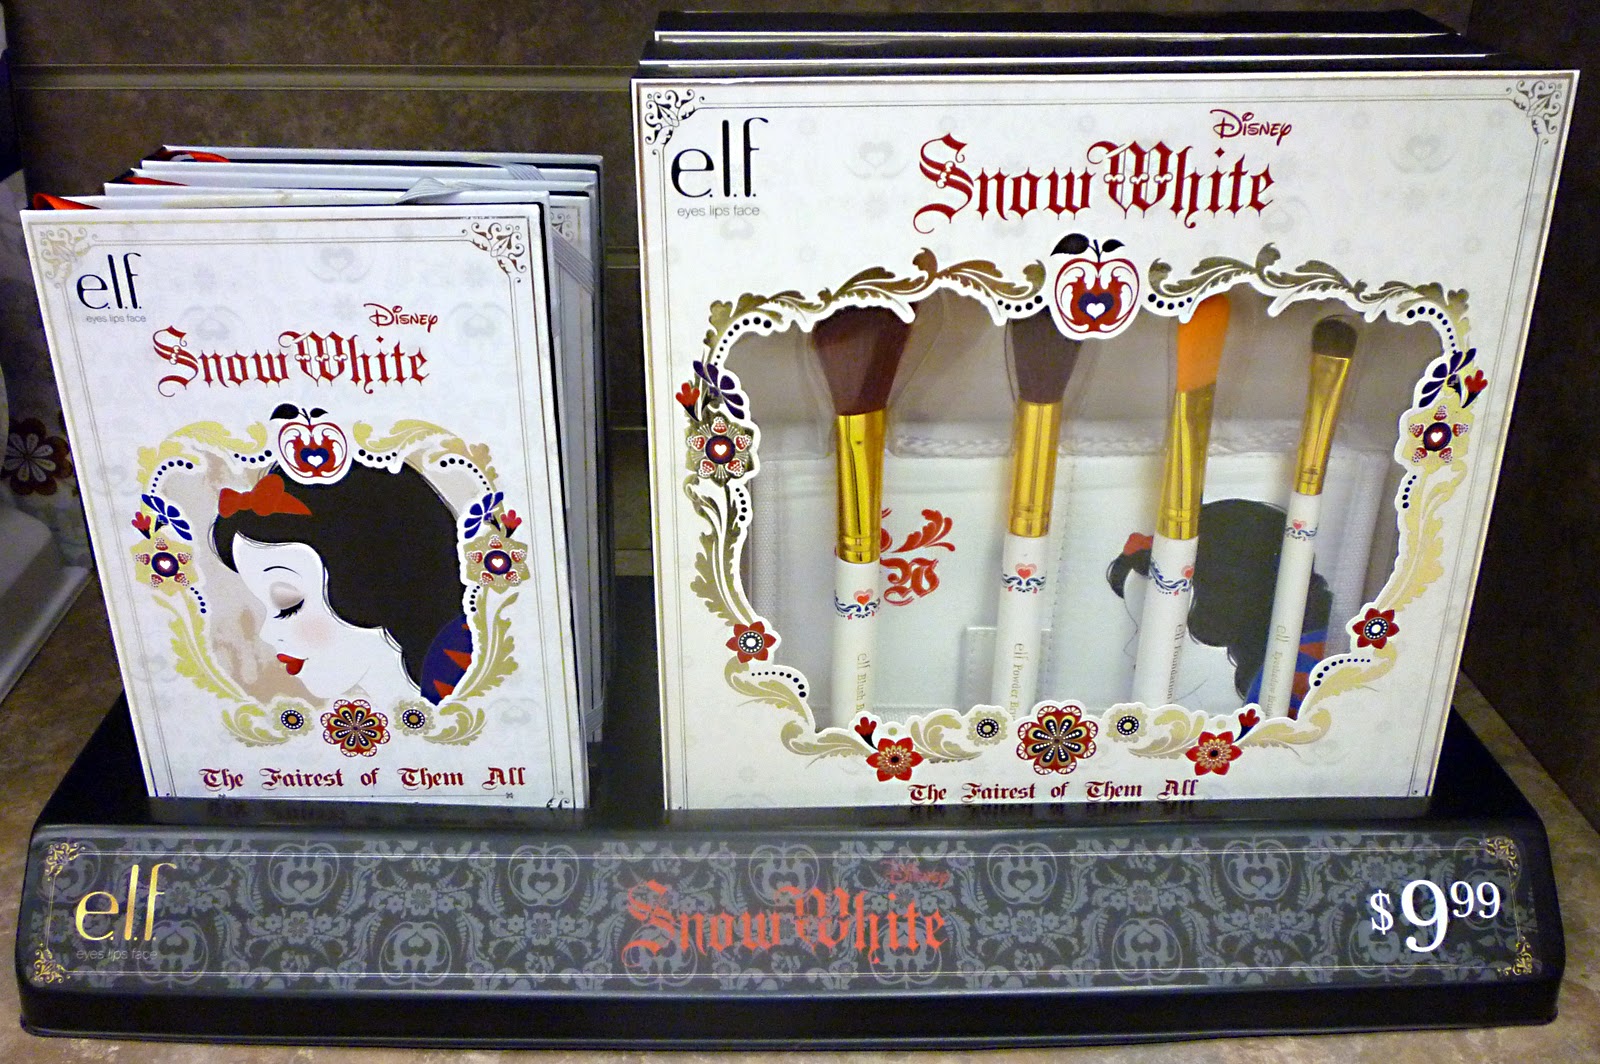 Filmic Light - Snow White Archive: 2014 E.L.F. Snow White Cosmetics at ...